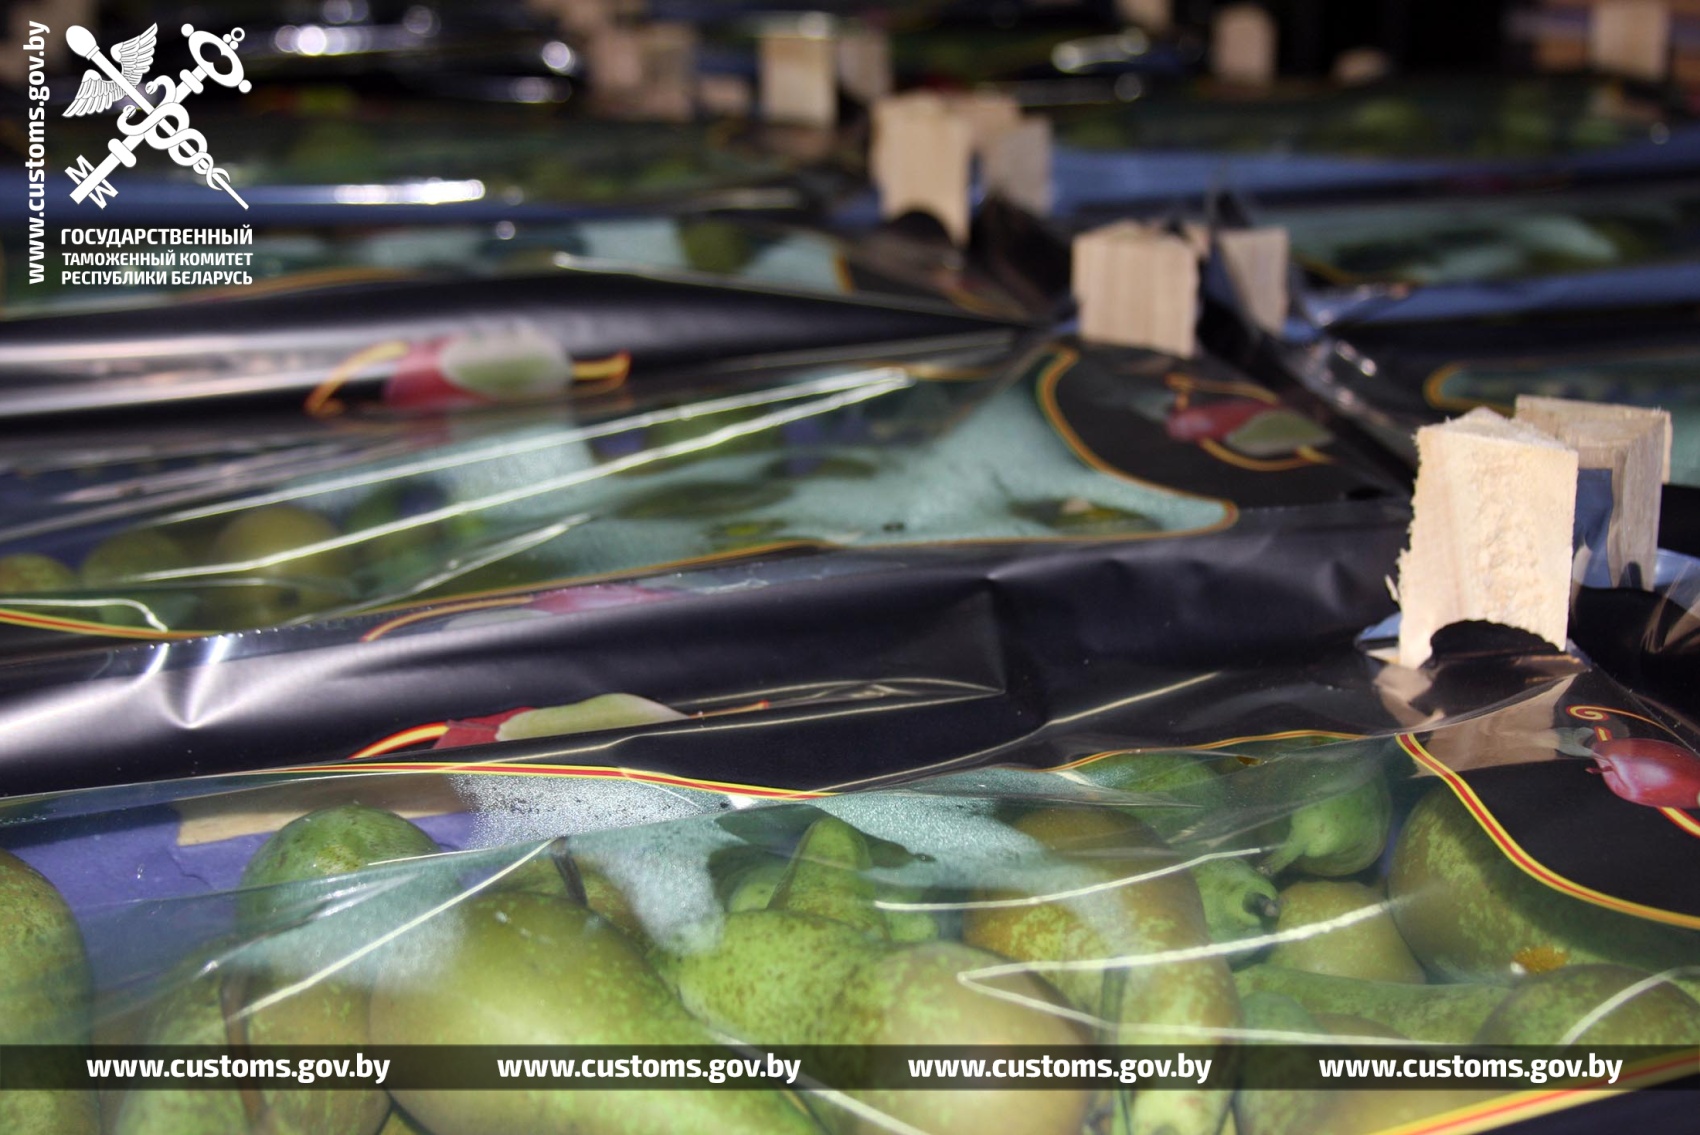 Витебская таможня помешала вывезти в Россию более 160 тонн контрабандных груш. Фото ГТК